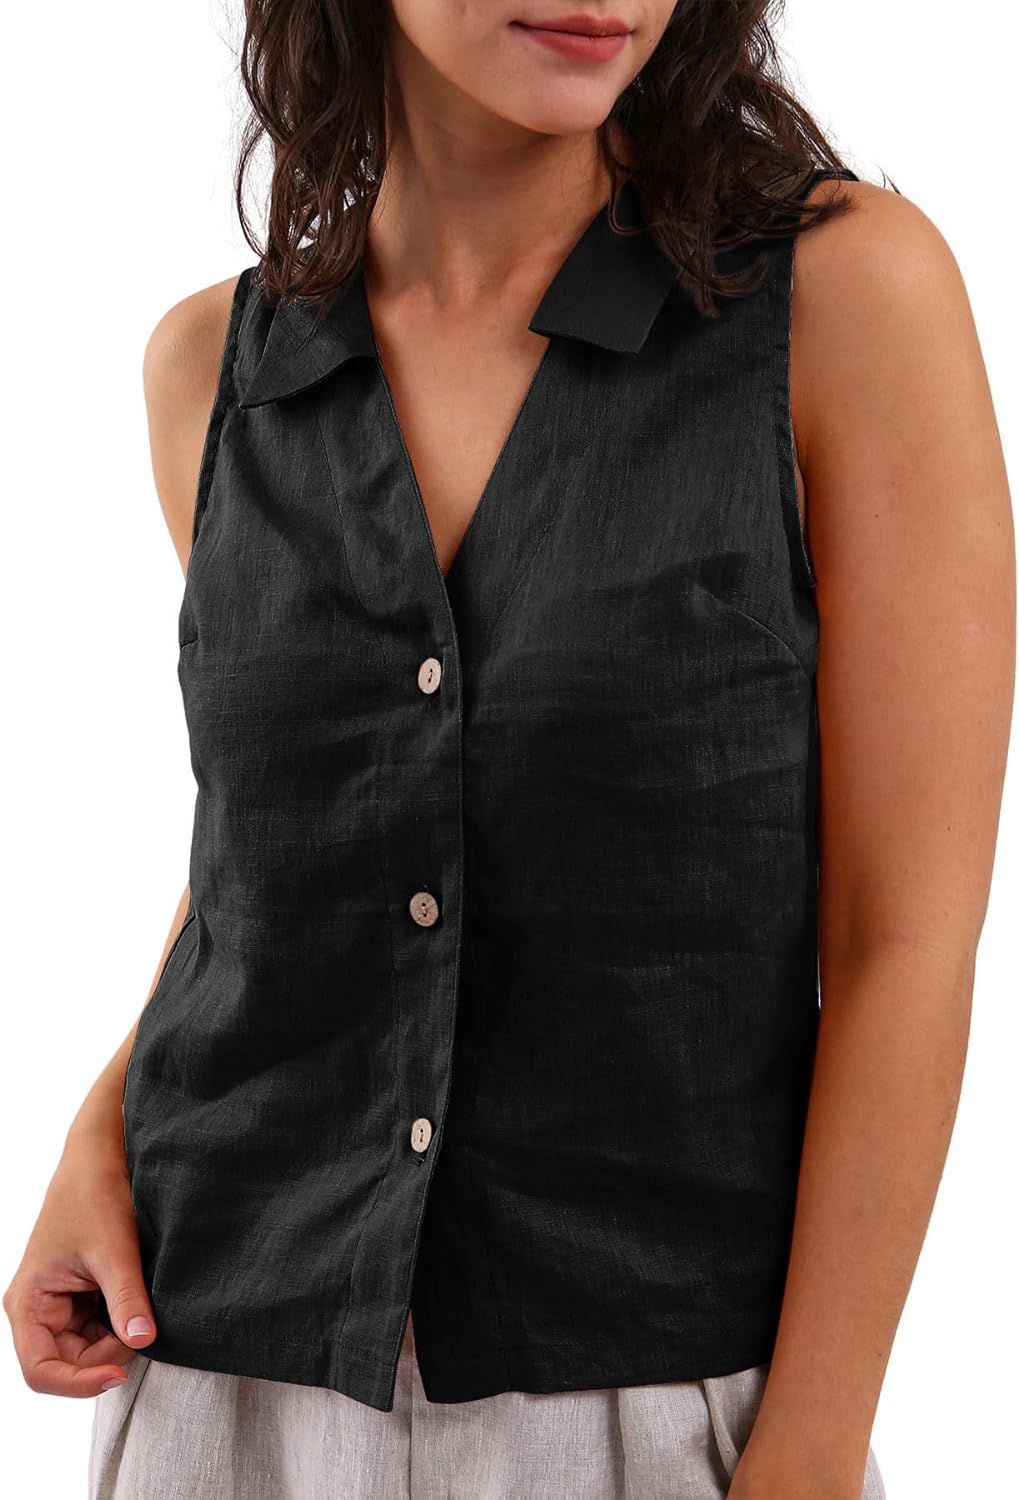 NTG Fad Black / Small Amazhiyu Women's 100% Linen Summer Sleeveless Button-Down Tops Slight Crop Vest